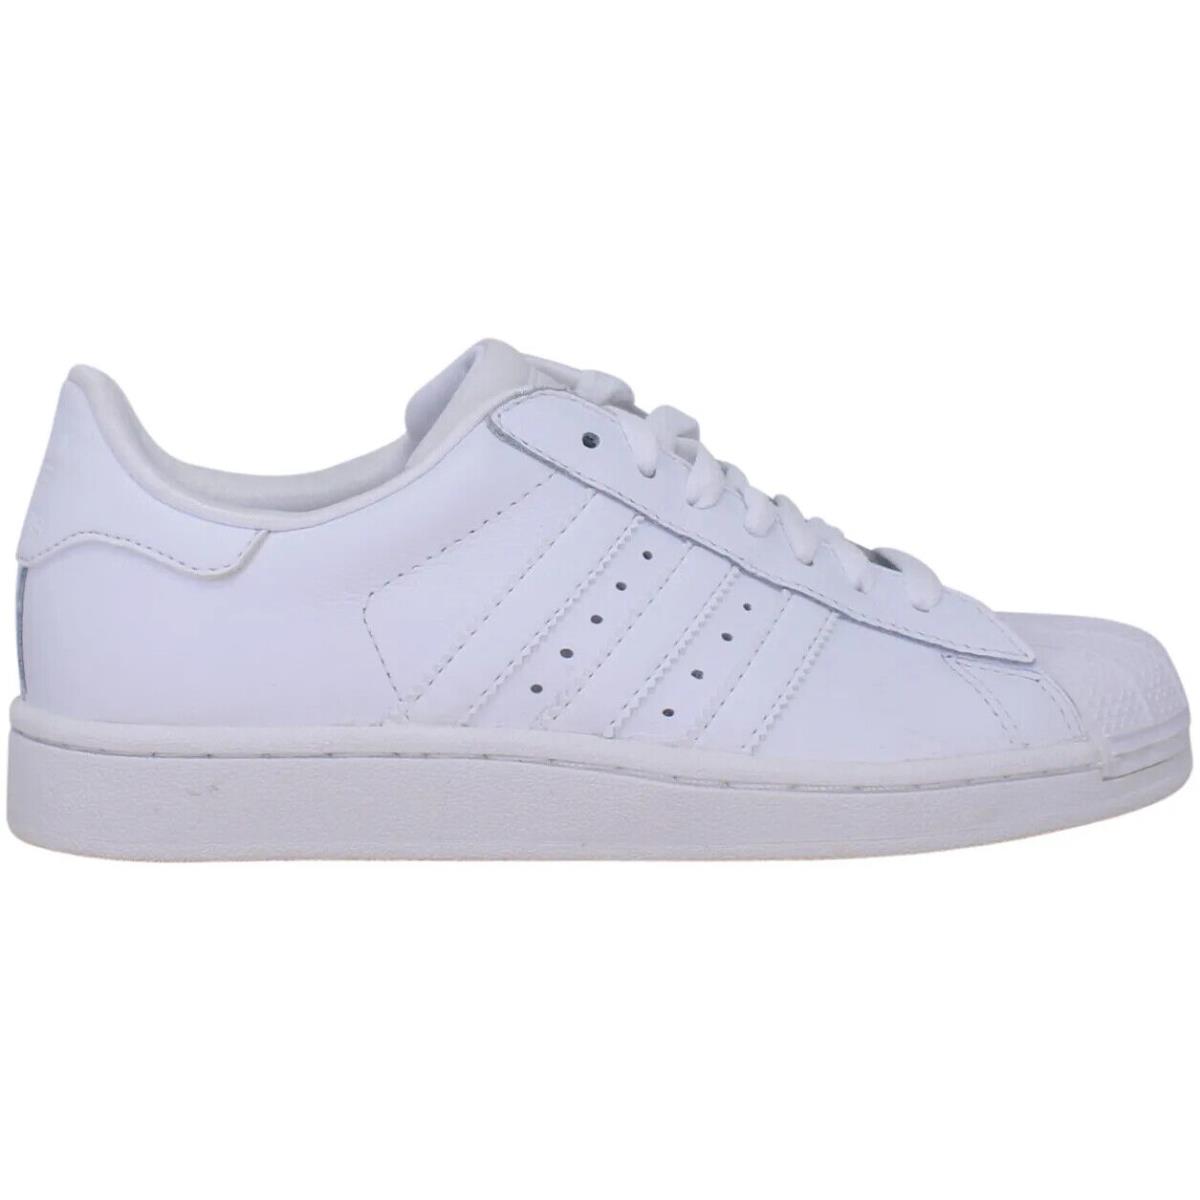 Adidas Originals Superstar 2 G15721 Youth White Leather Shoes Size US 5Y | 692740835648 - Adidas shoes Originals Superstar - White | SporTipTop